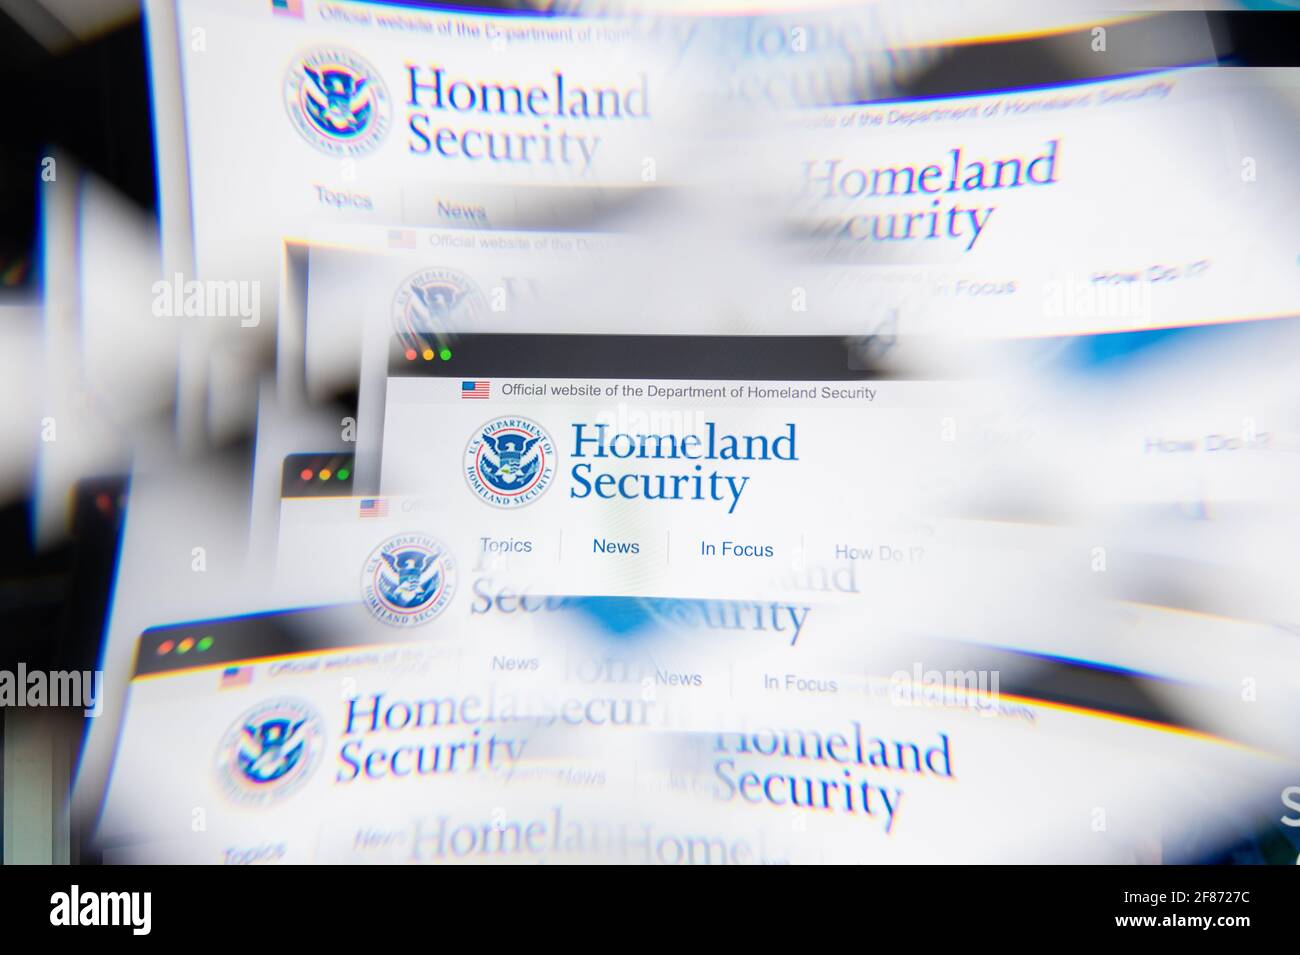 Mailand, Italien - 10. APRIL 2021: DHS-Logo auf dem Laptop-Bildschirm durch ein optisches Prisma gesehen. Illustratives redaktionelles Bild von der DHS-Website. Stockfoto